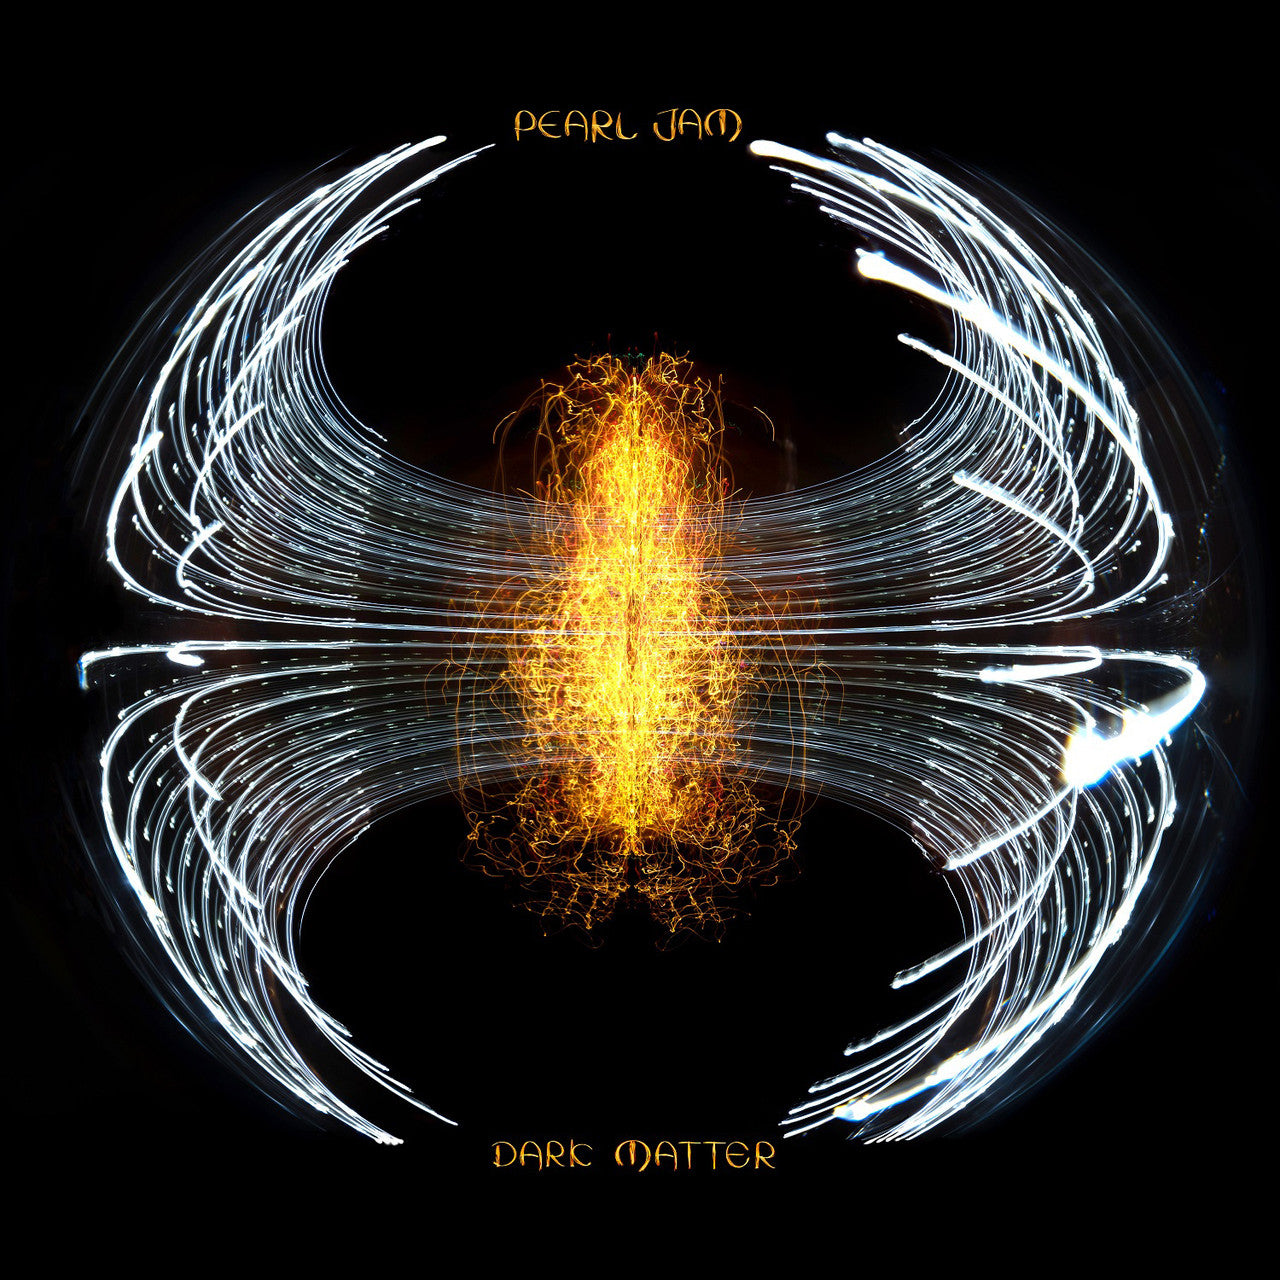 Pearl Jam - Dark Matter (Missoula RSD24 Variant)